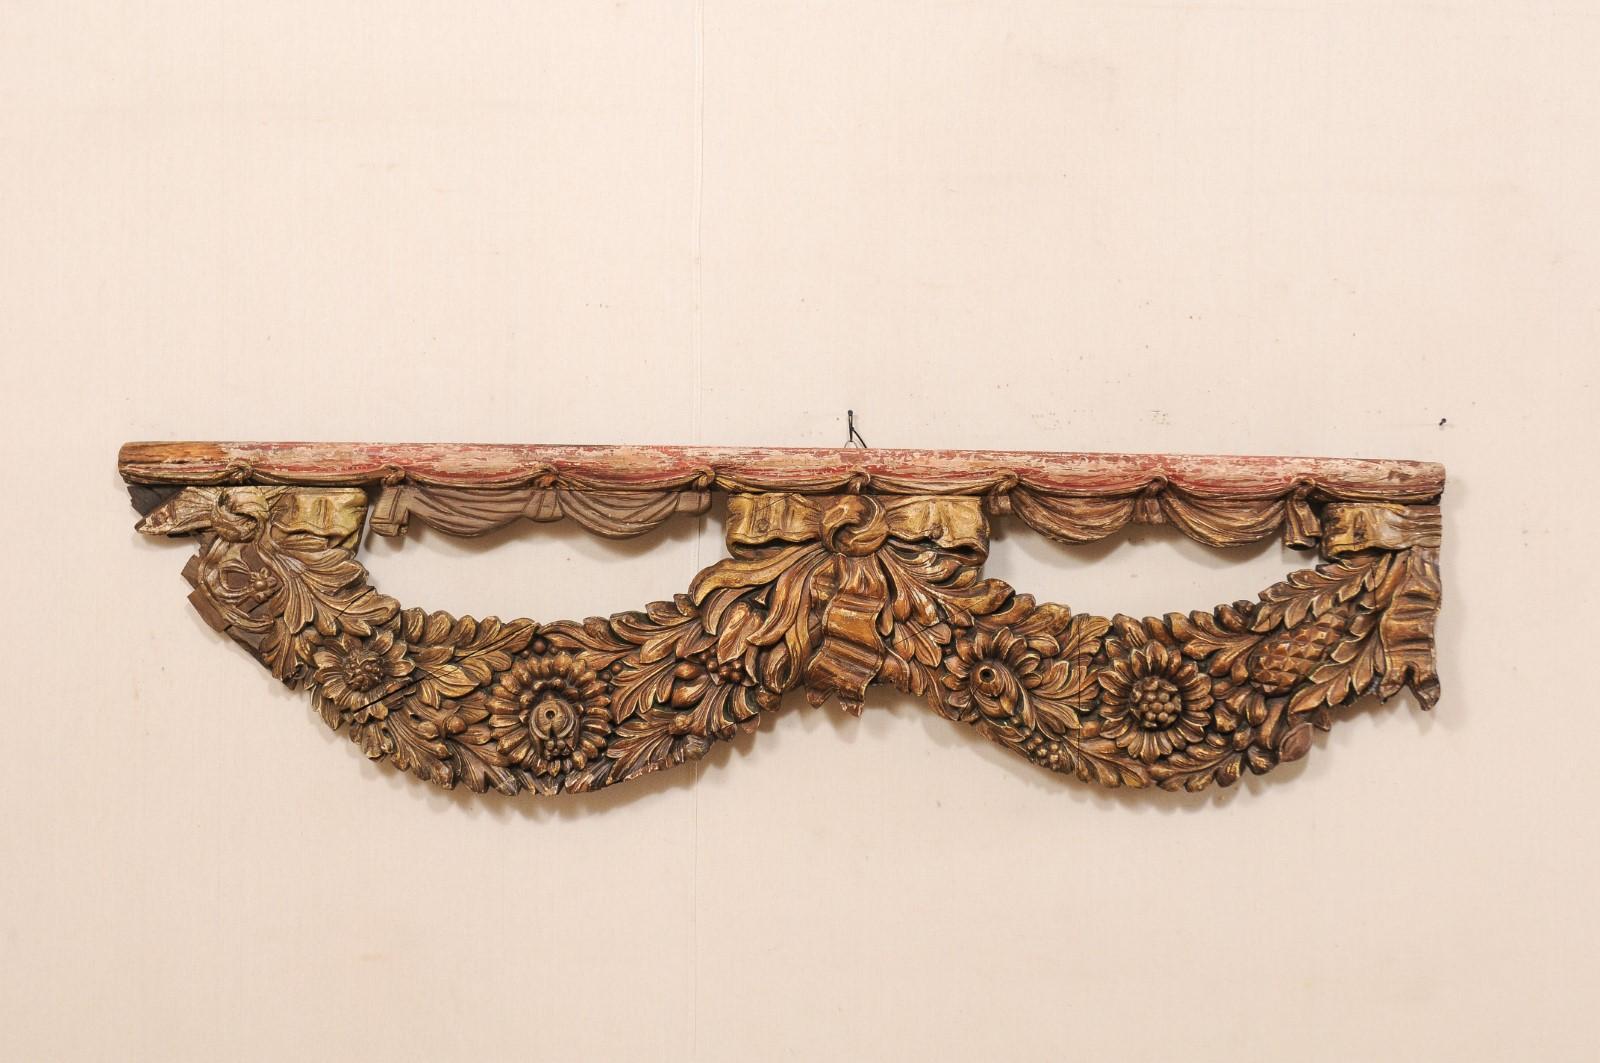 Un fragment de bois sculpté français du début du 19e siècle. Cette décoration murale ancienne de France est de forme oblongue, d'une longueur d'un peu moins d'un mètre et demi, positionnée horizontalement, avec un rail supérieur en bois de niveau,